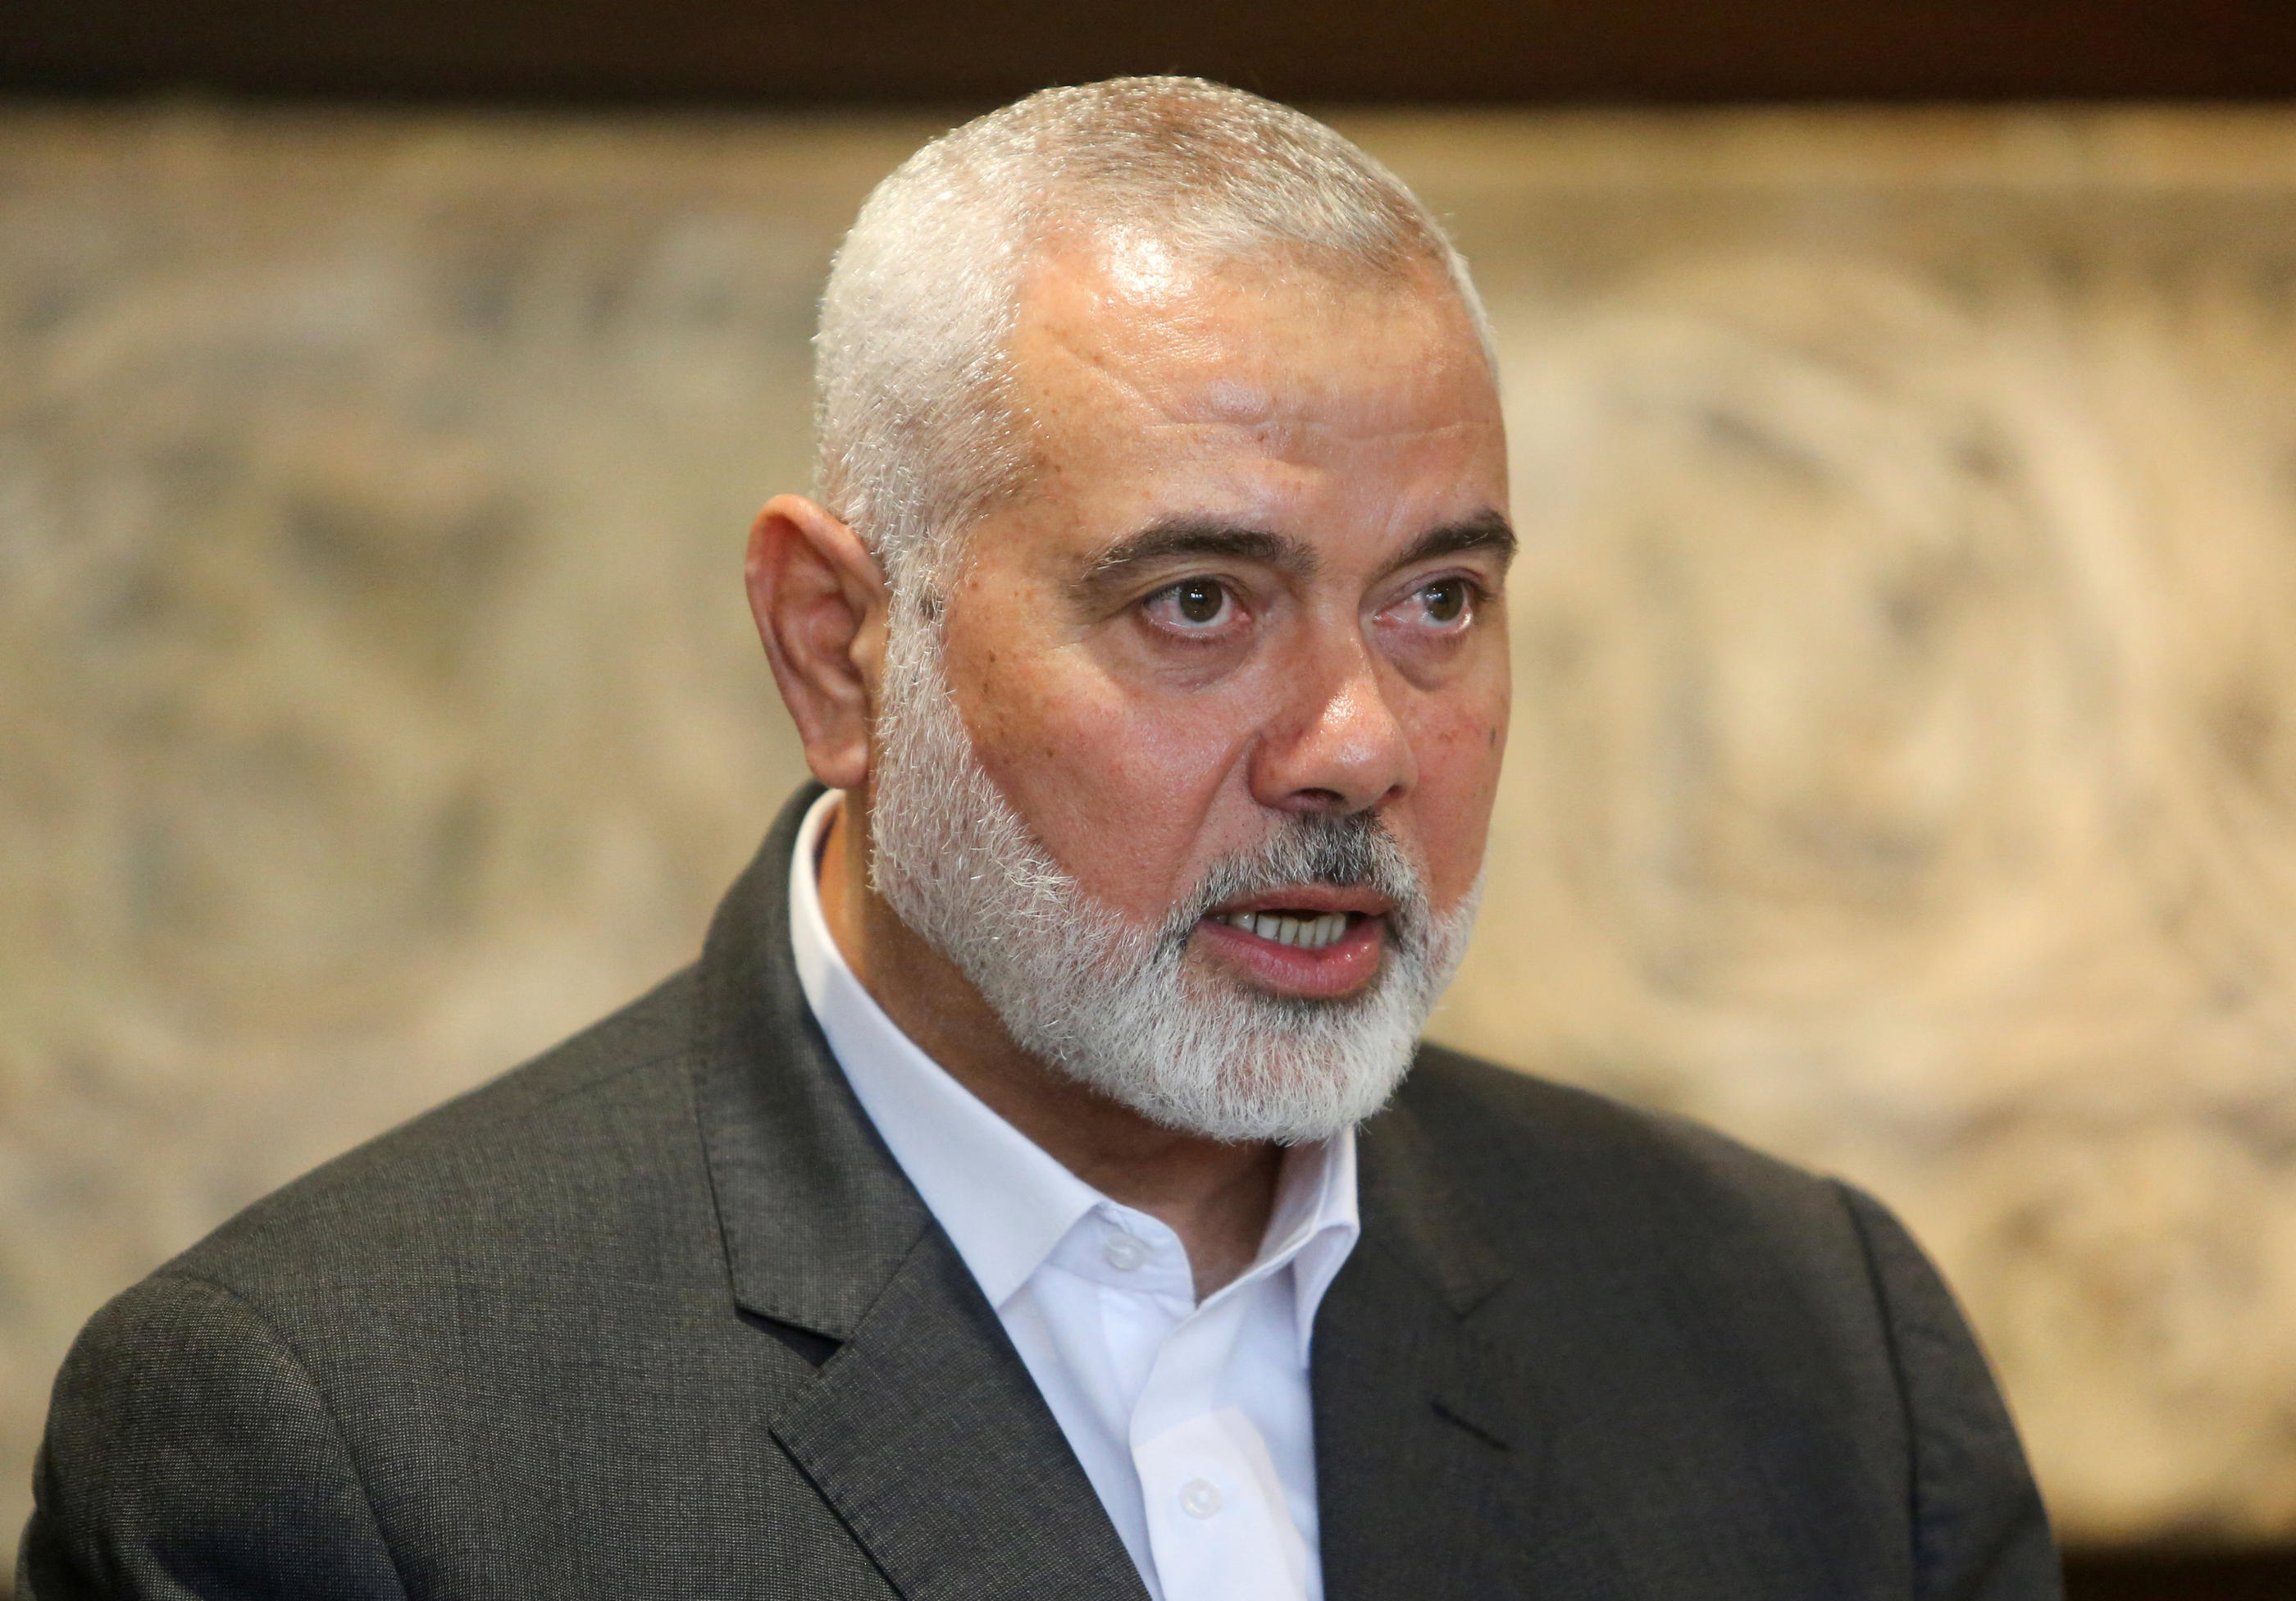 Des négociations sont menées depuis plusieurs semaines entre des intermédiaires d'Israël et du Hamas, sous l'égide des médiateurs égyptiens, quataris et américains. REUTERS/Aziz Taher